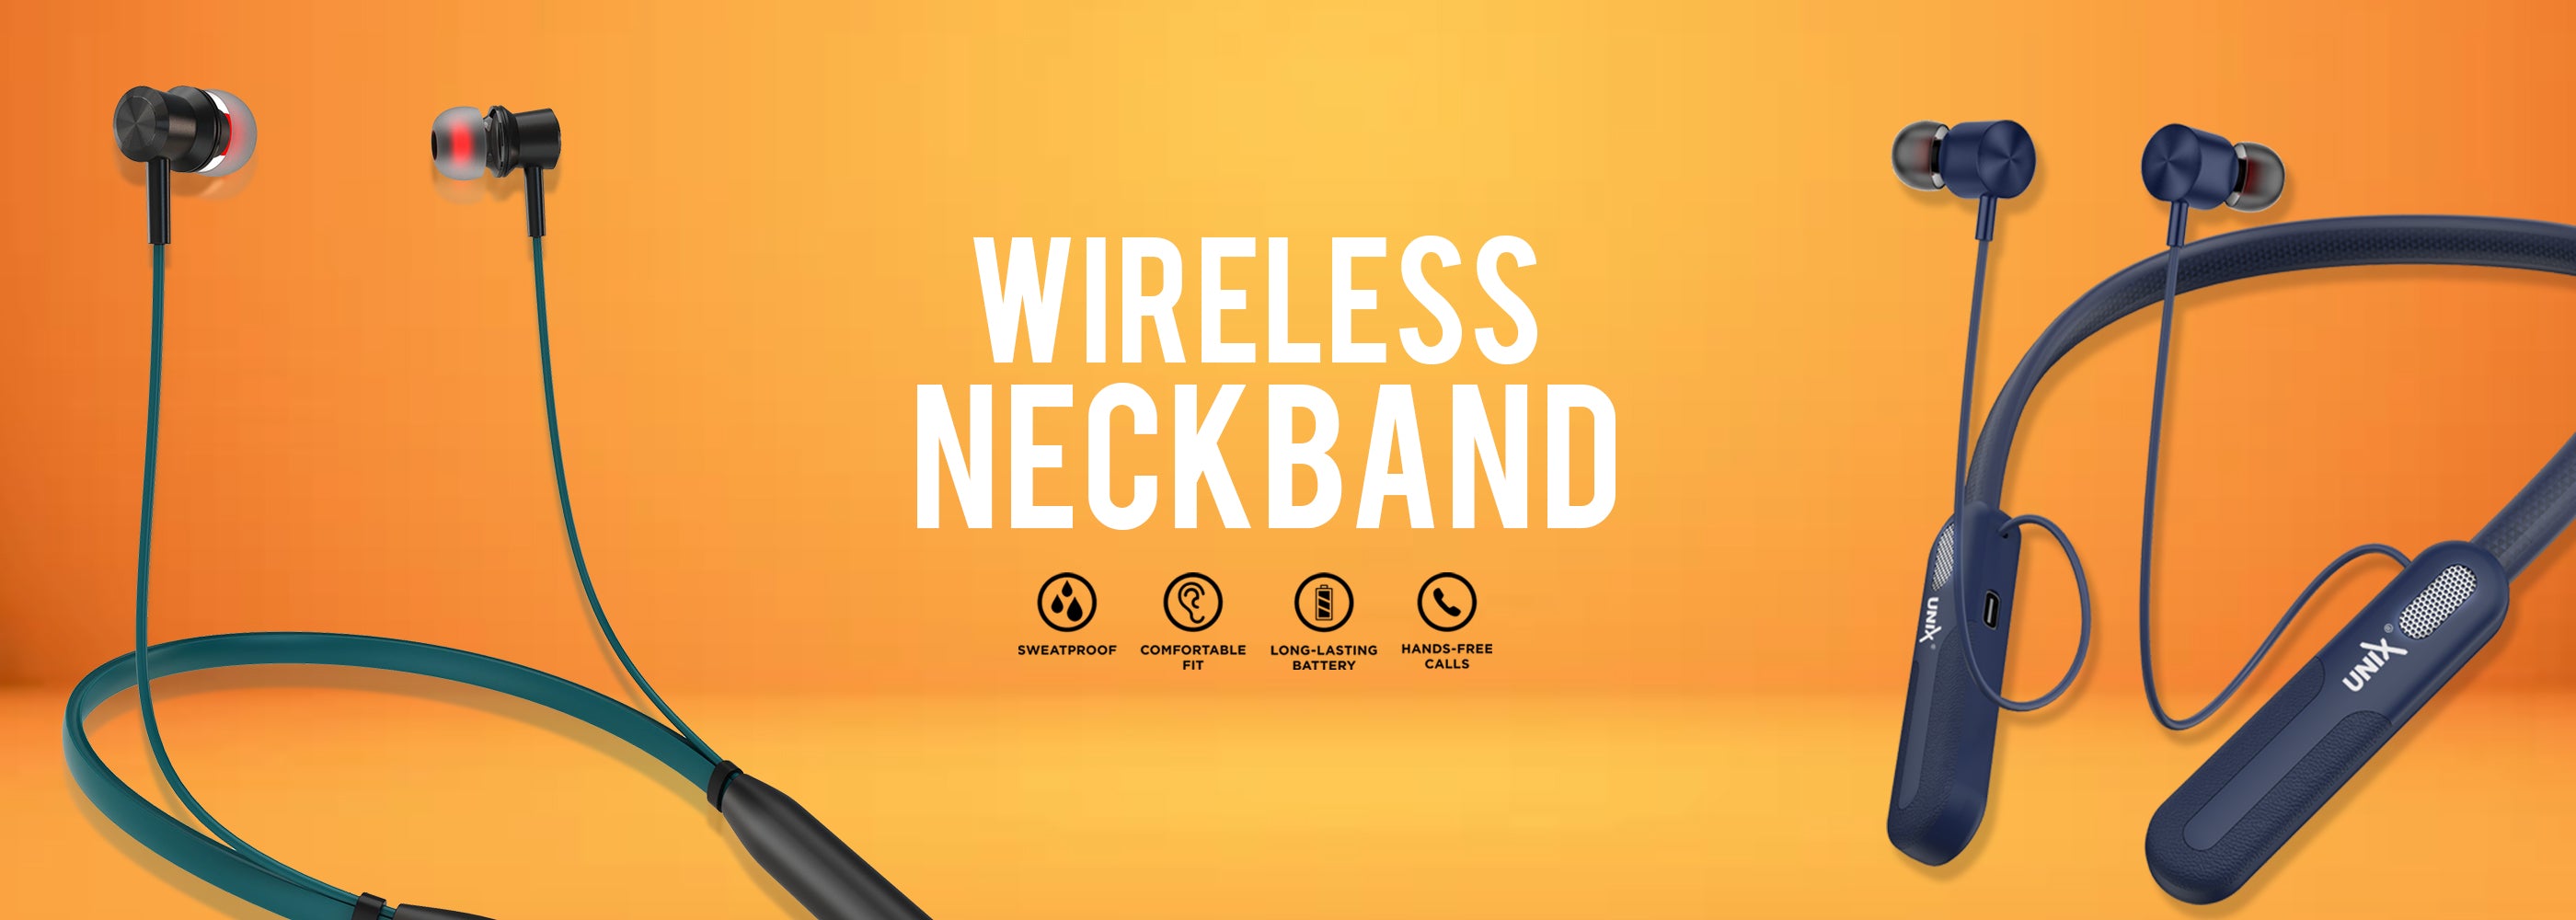 Buy Unix Best wireless neckband 